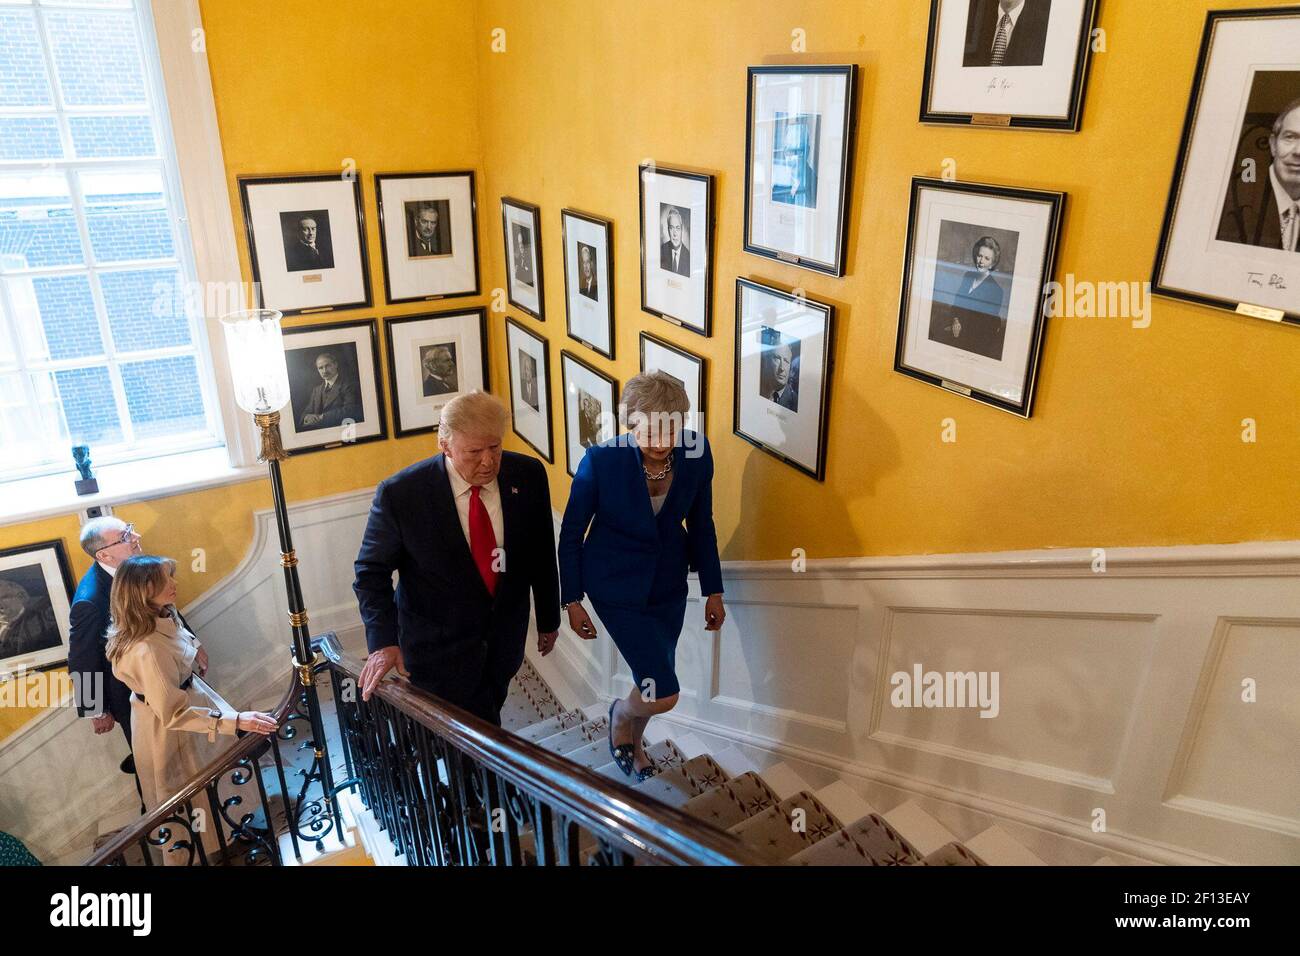 Le président Donald Trump la première dame Melania Trump la première ministre britannique Theresa May et son mari, M. Philip May, marchent sur l'escalier principal au 10 Downing Street mardi 4 2019 juin à Londres. Banque D'Images